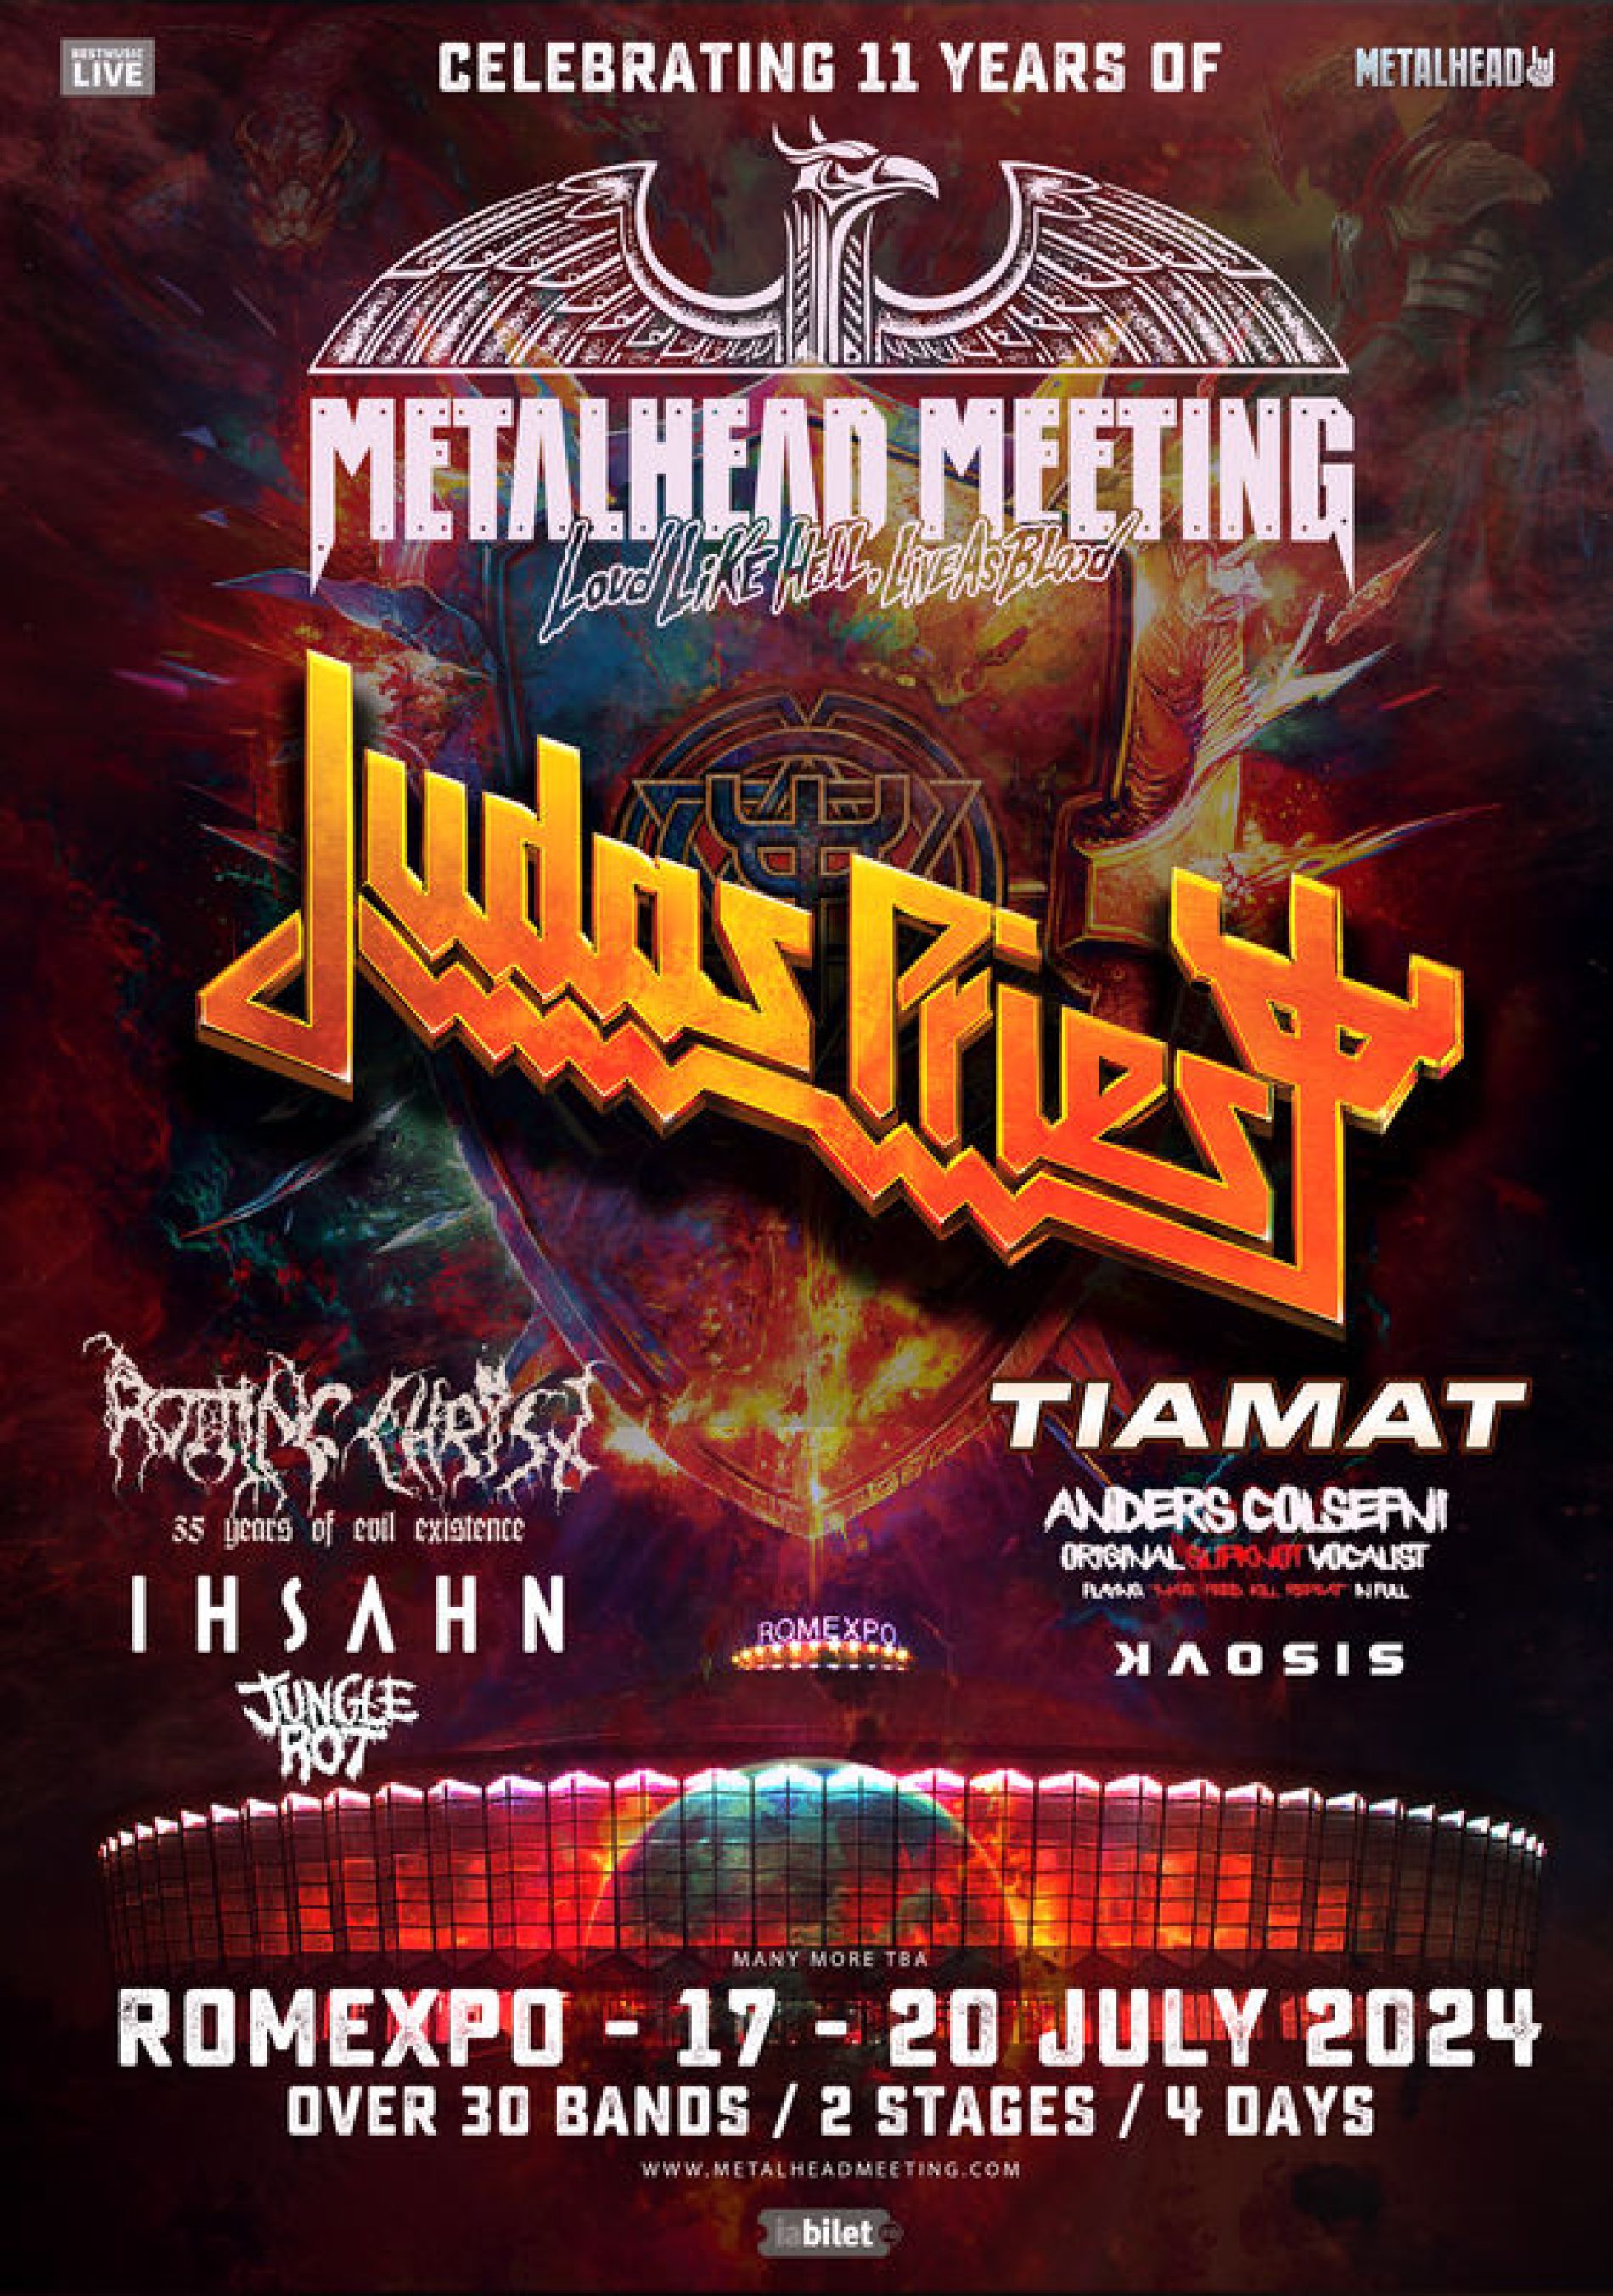 Judas Priest cântă la festivalul Metalhead Meeting 2024 în iulie la Romexpo